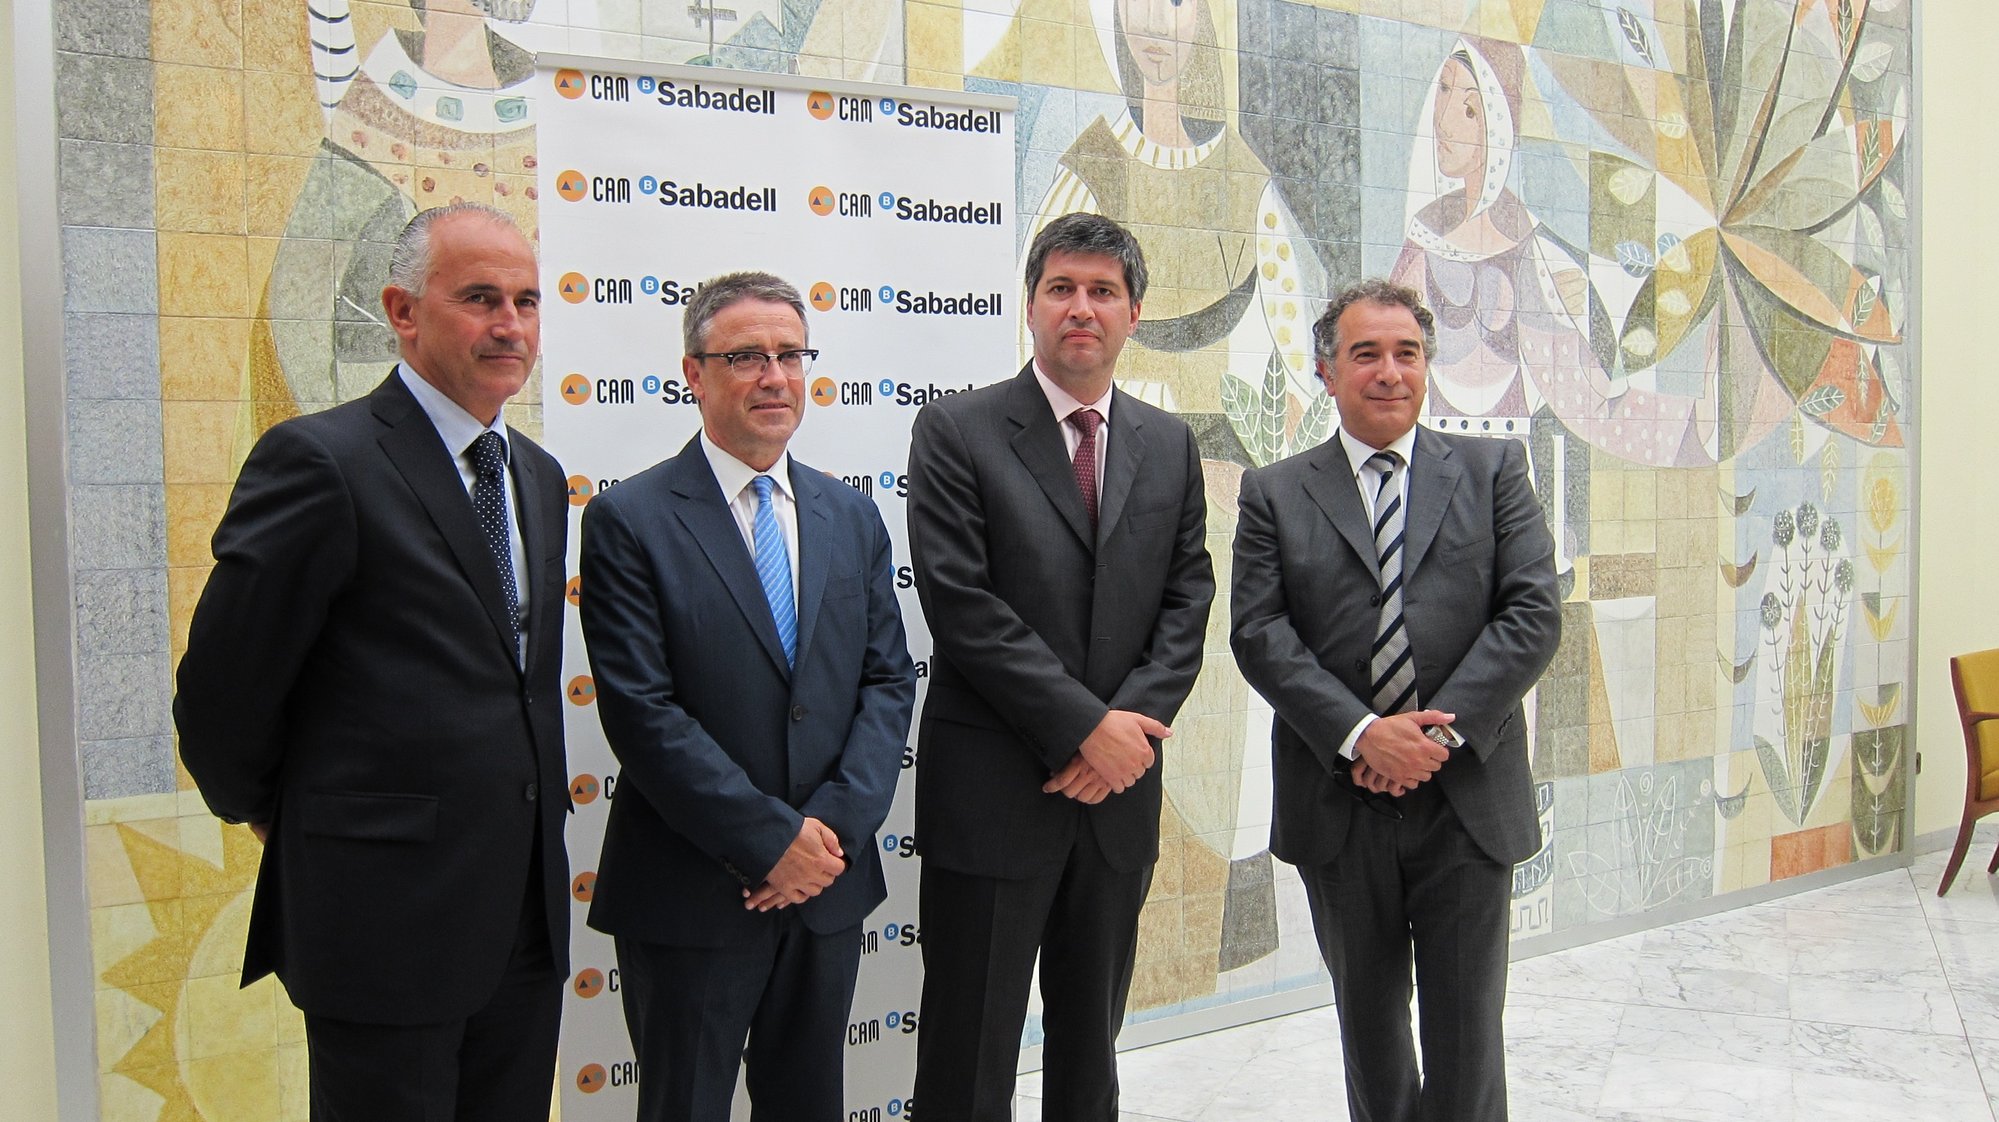 El Sabadell espera que Europa autorice la integración de la CAM antes de verano